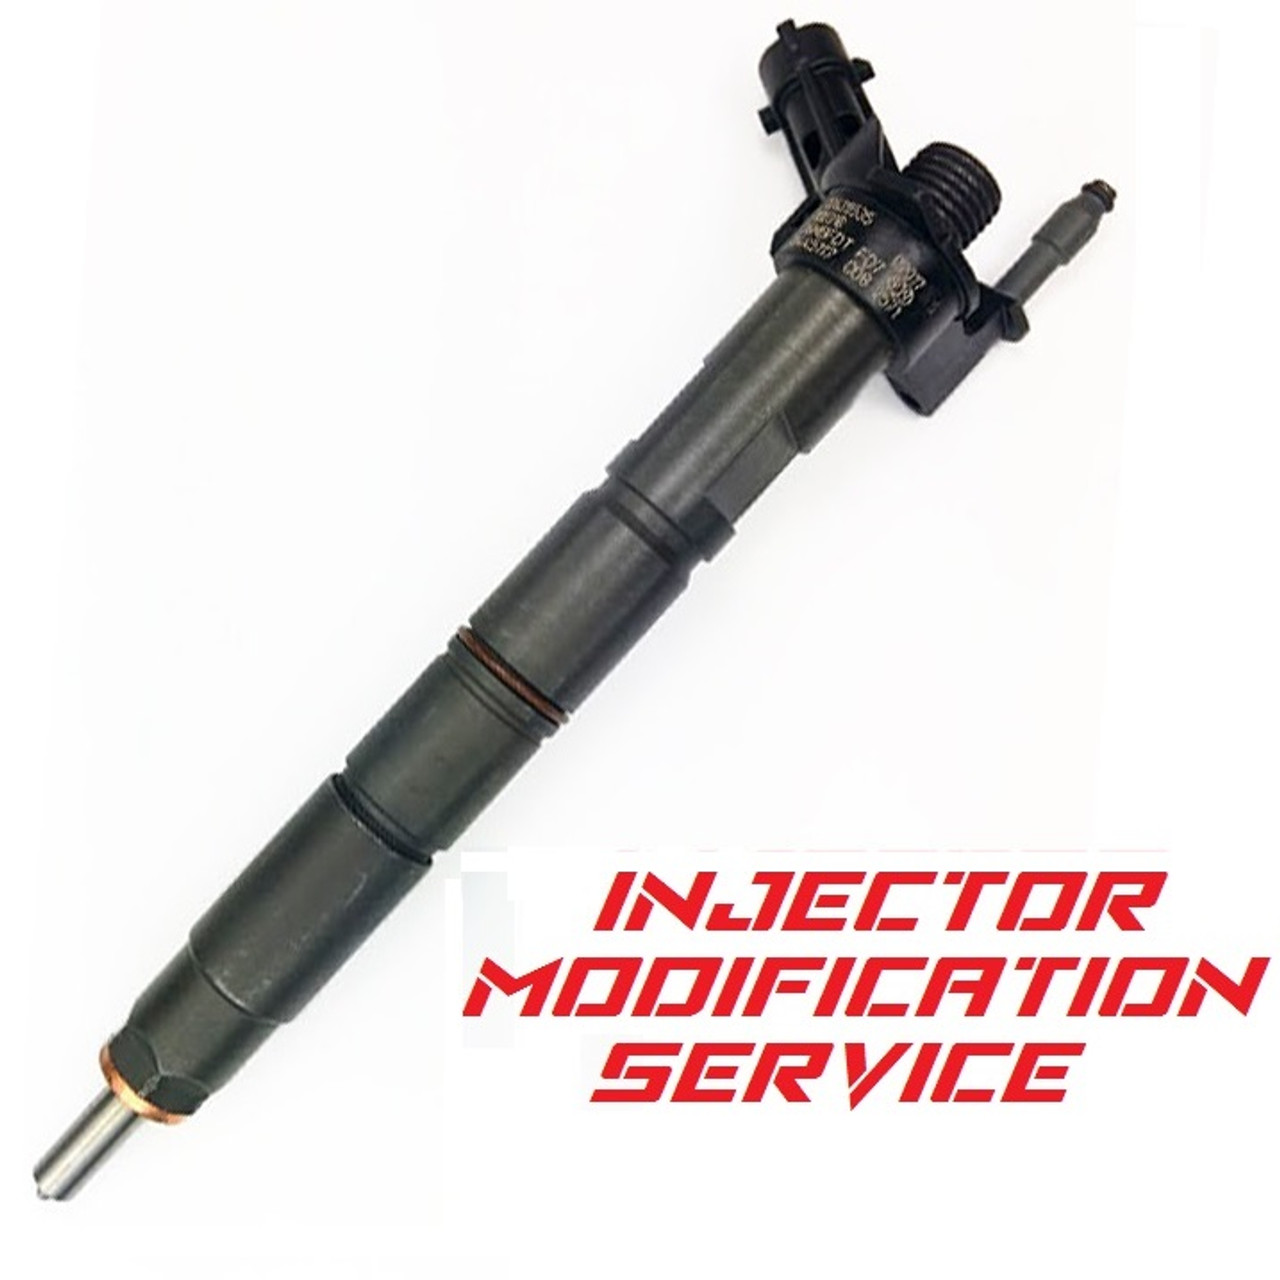 Dynomite Duramax 11-16 LML Injector Modification Service